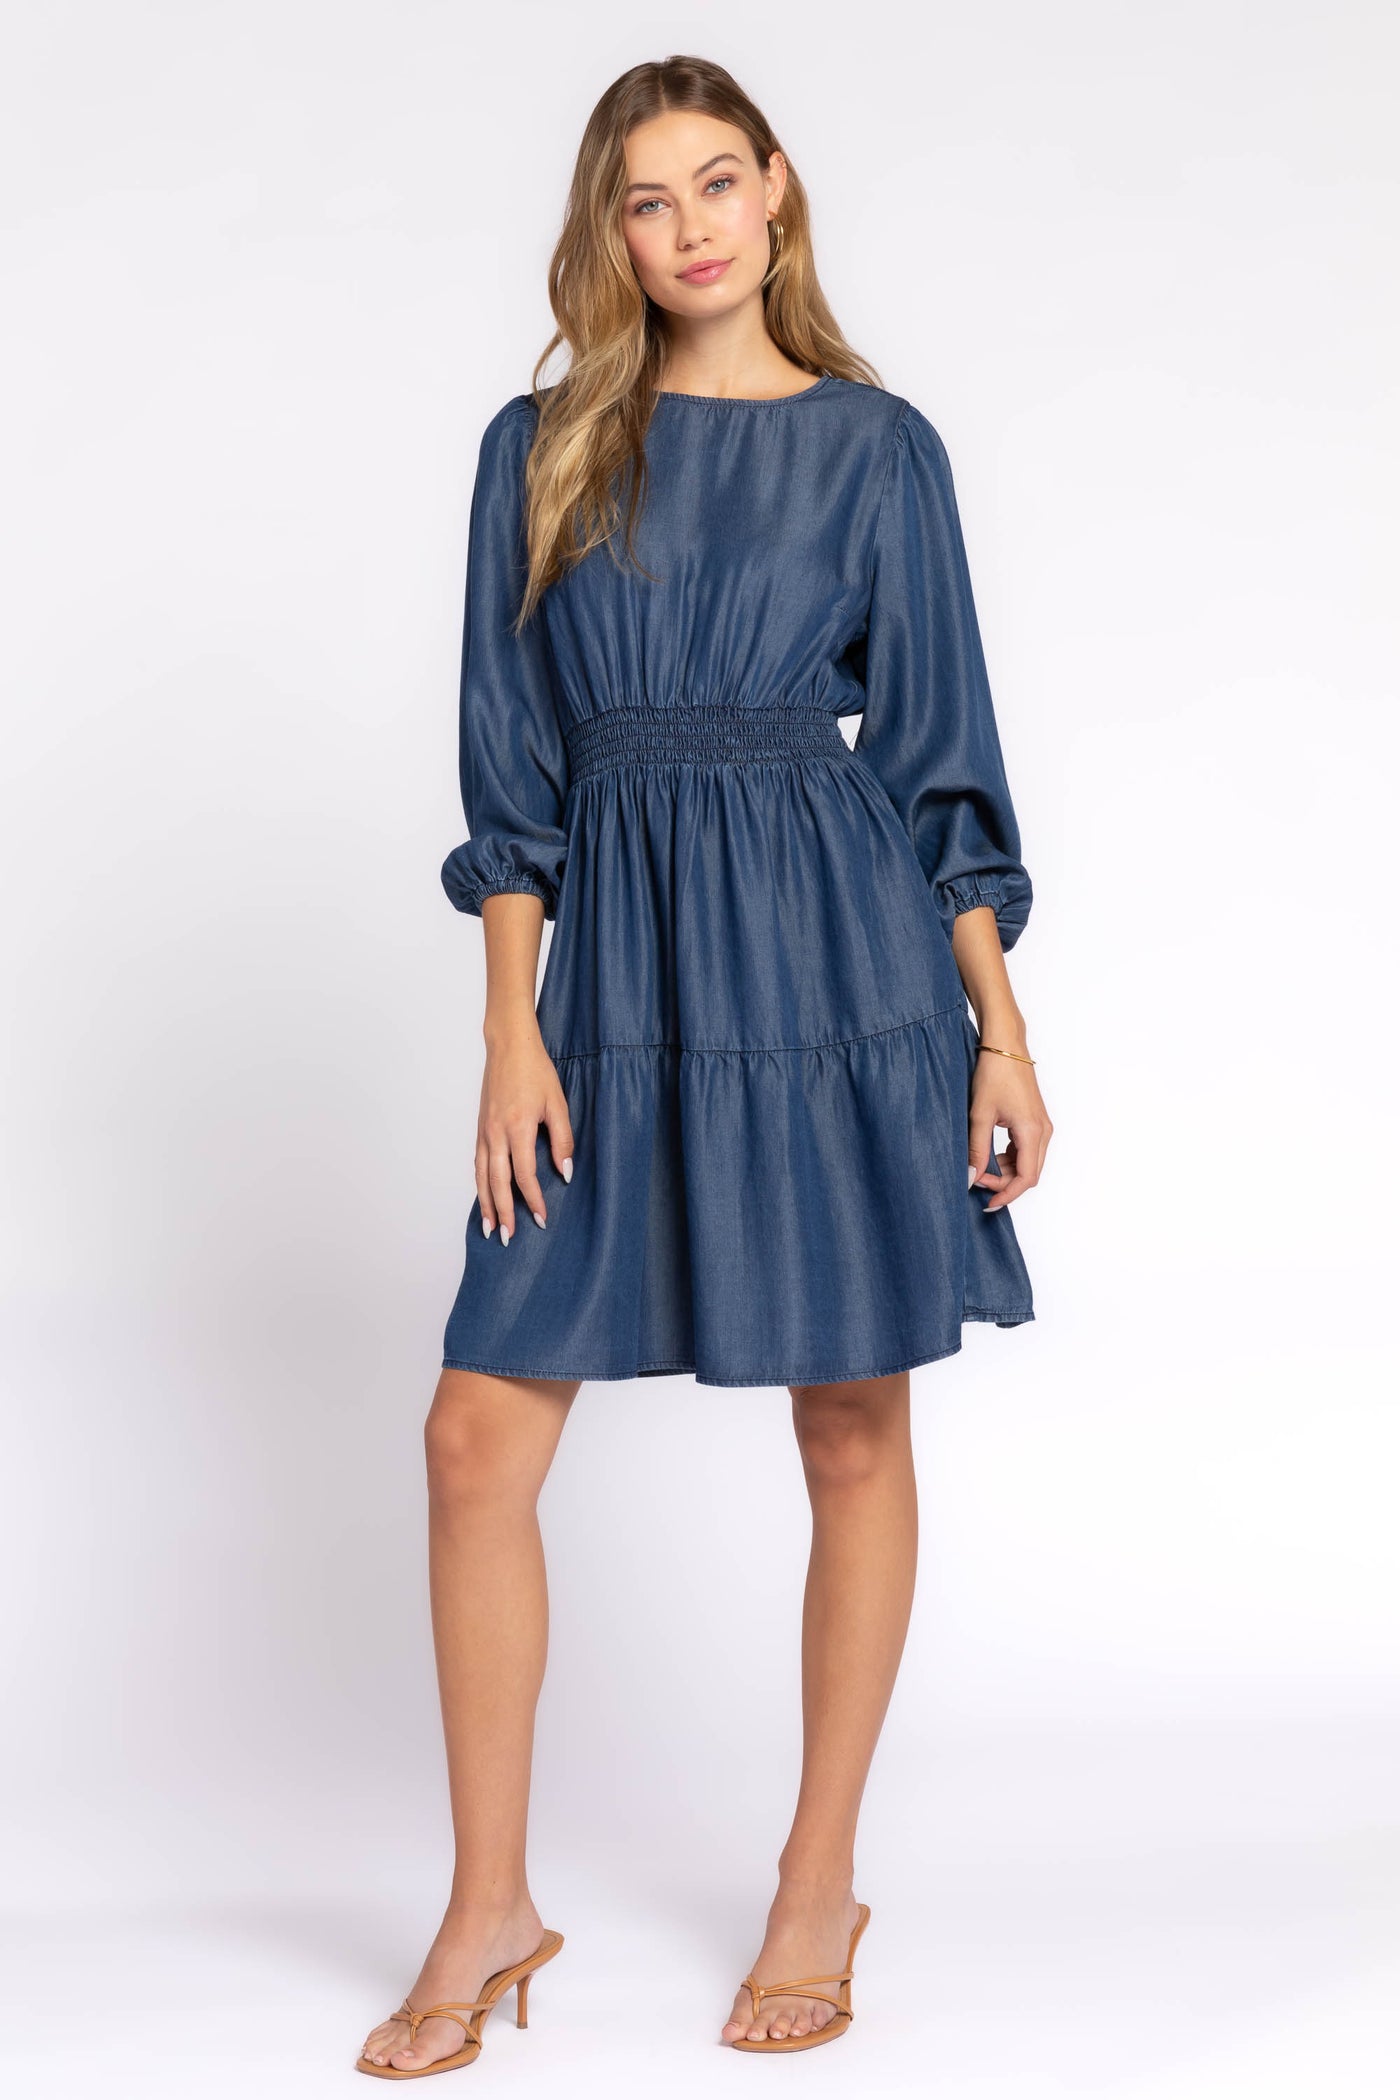 Shasta Navy Dress - Dresses - Velvet Heart Clothing